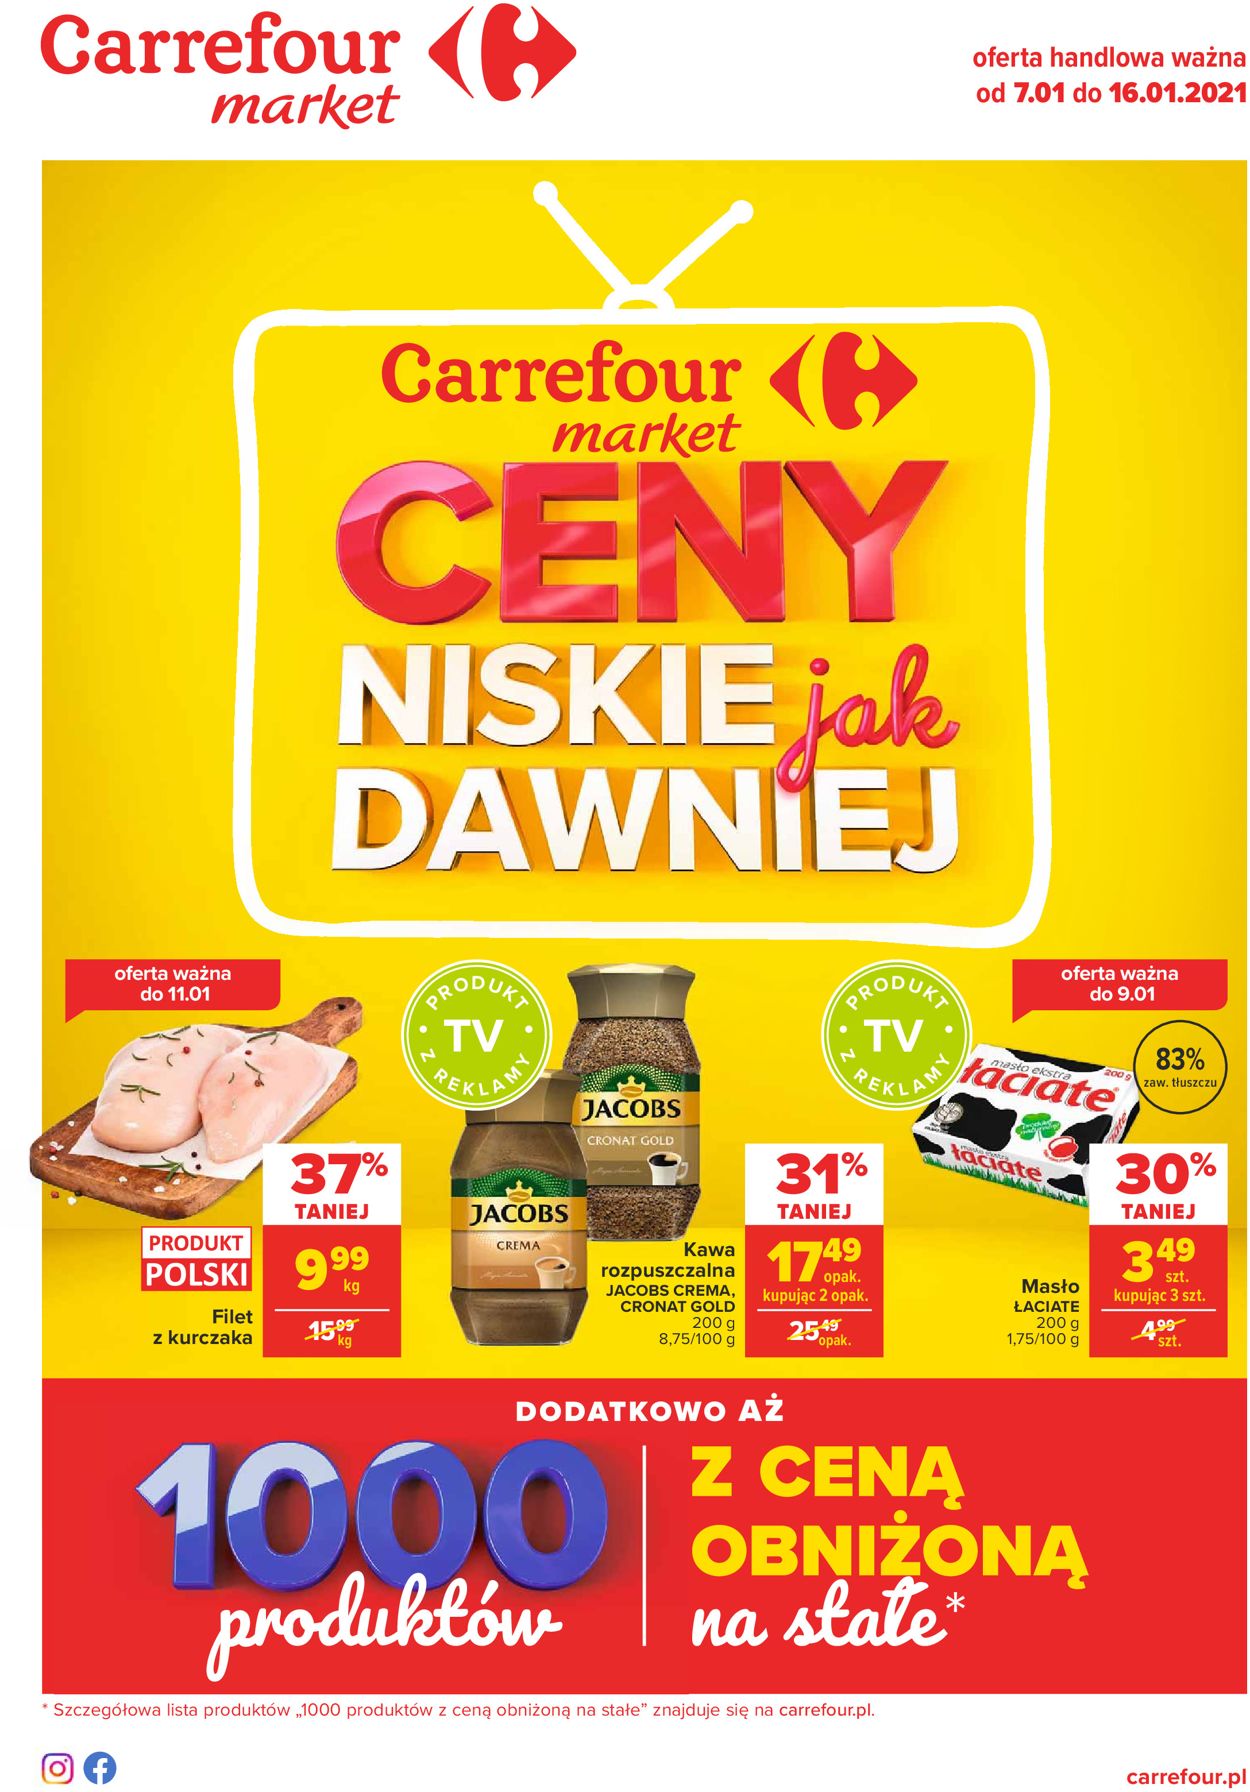 Gazetka promocyjna Carrefour Ceny niskie jak dawniej - 07.01-16.01.2021